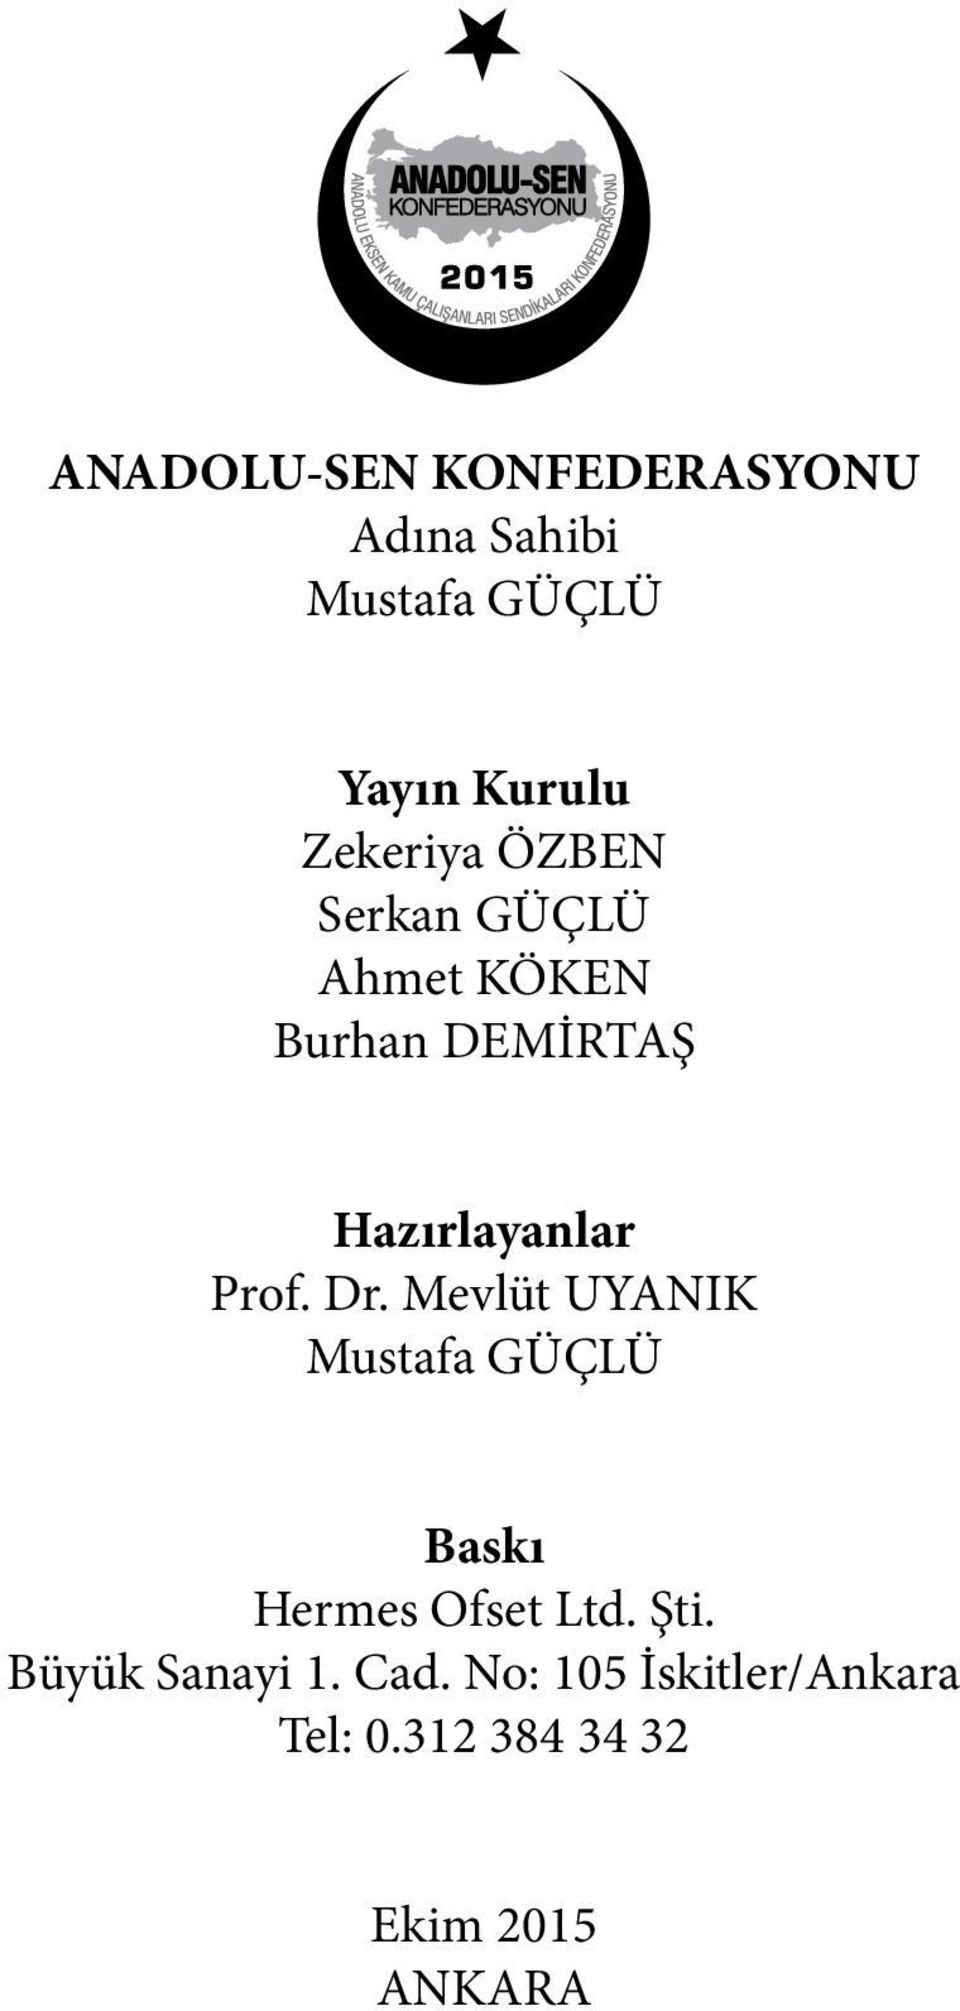 Prof. Dr. Mevlüt UYANIK Mustafa GÜÇLÜ Baskı Hermes Ofset Ltd. Şti.